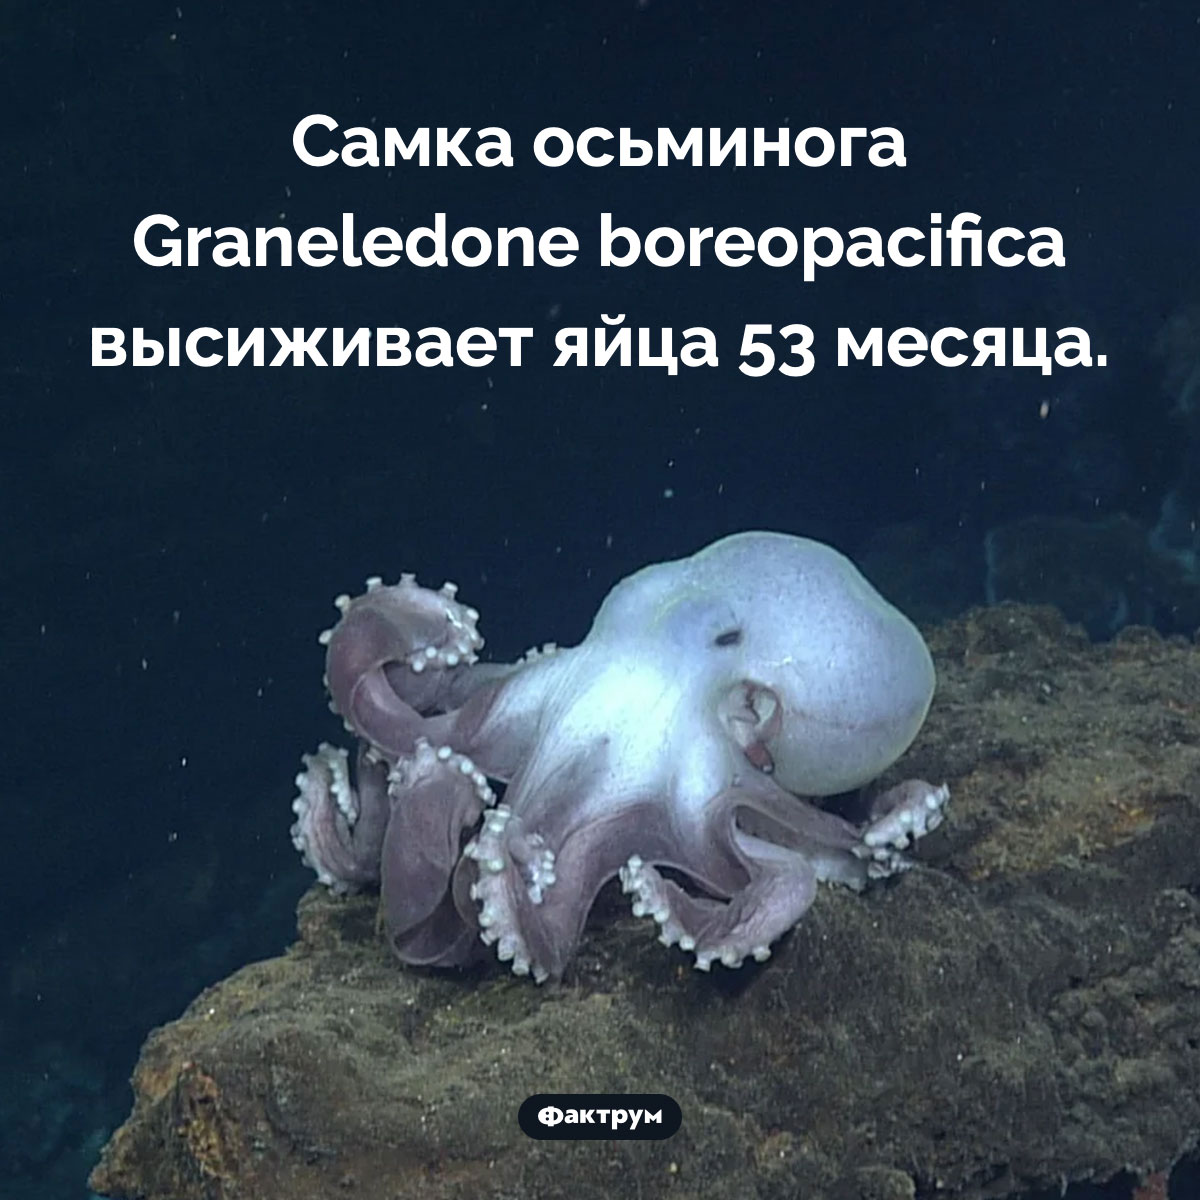 Самое долгое высиживание яиц. Самка осьминога Graneledone boreopacifica высиживает яйца 53 месяца.